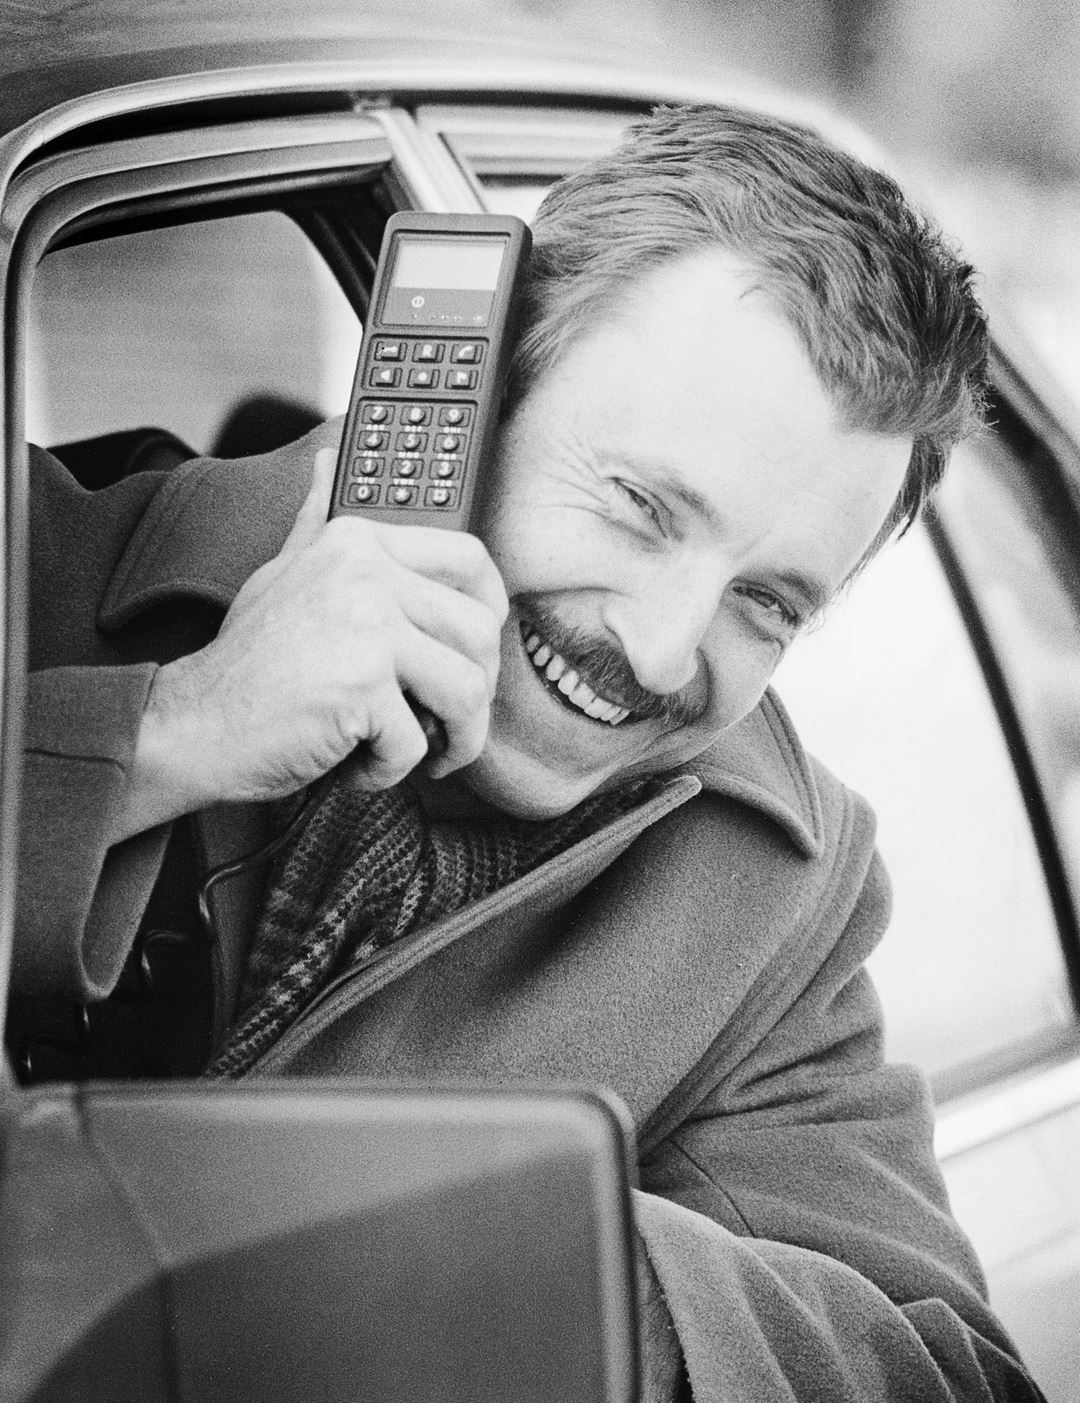 Mann stikker hodet ut av bilvindu i 1987. I hånden holder han en av datatidas store og klumpete mobiltelefoner.